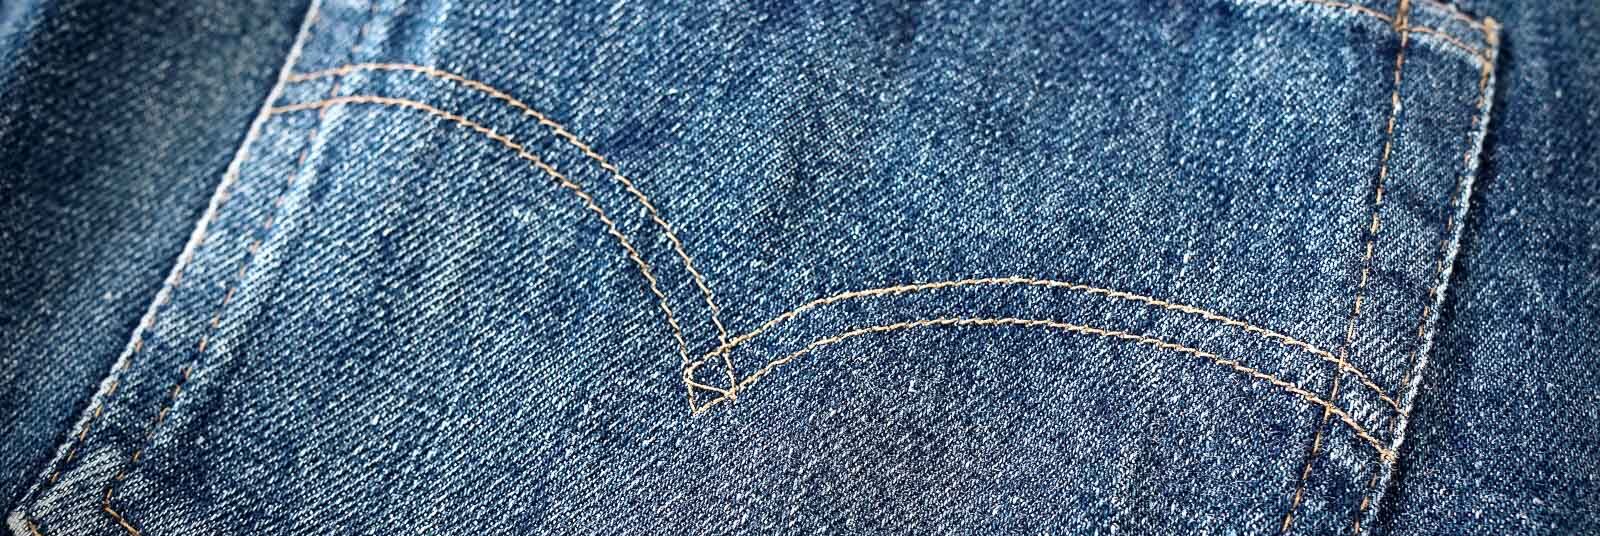 Denim Jeans Fading Guide Explains Terminology